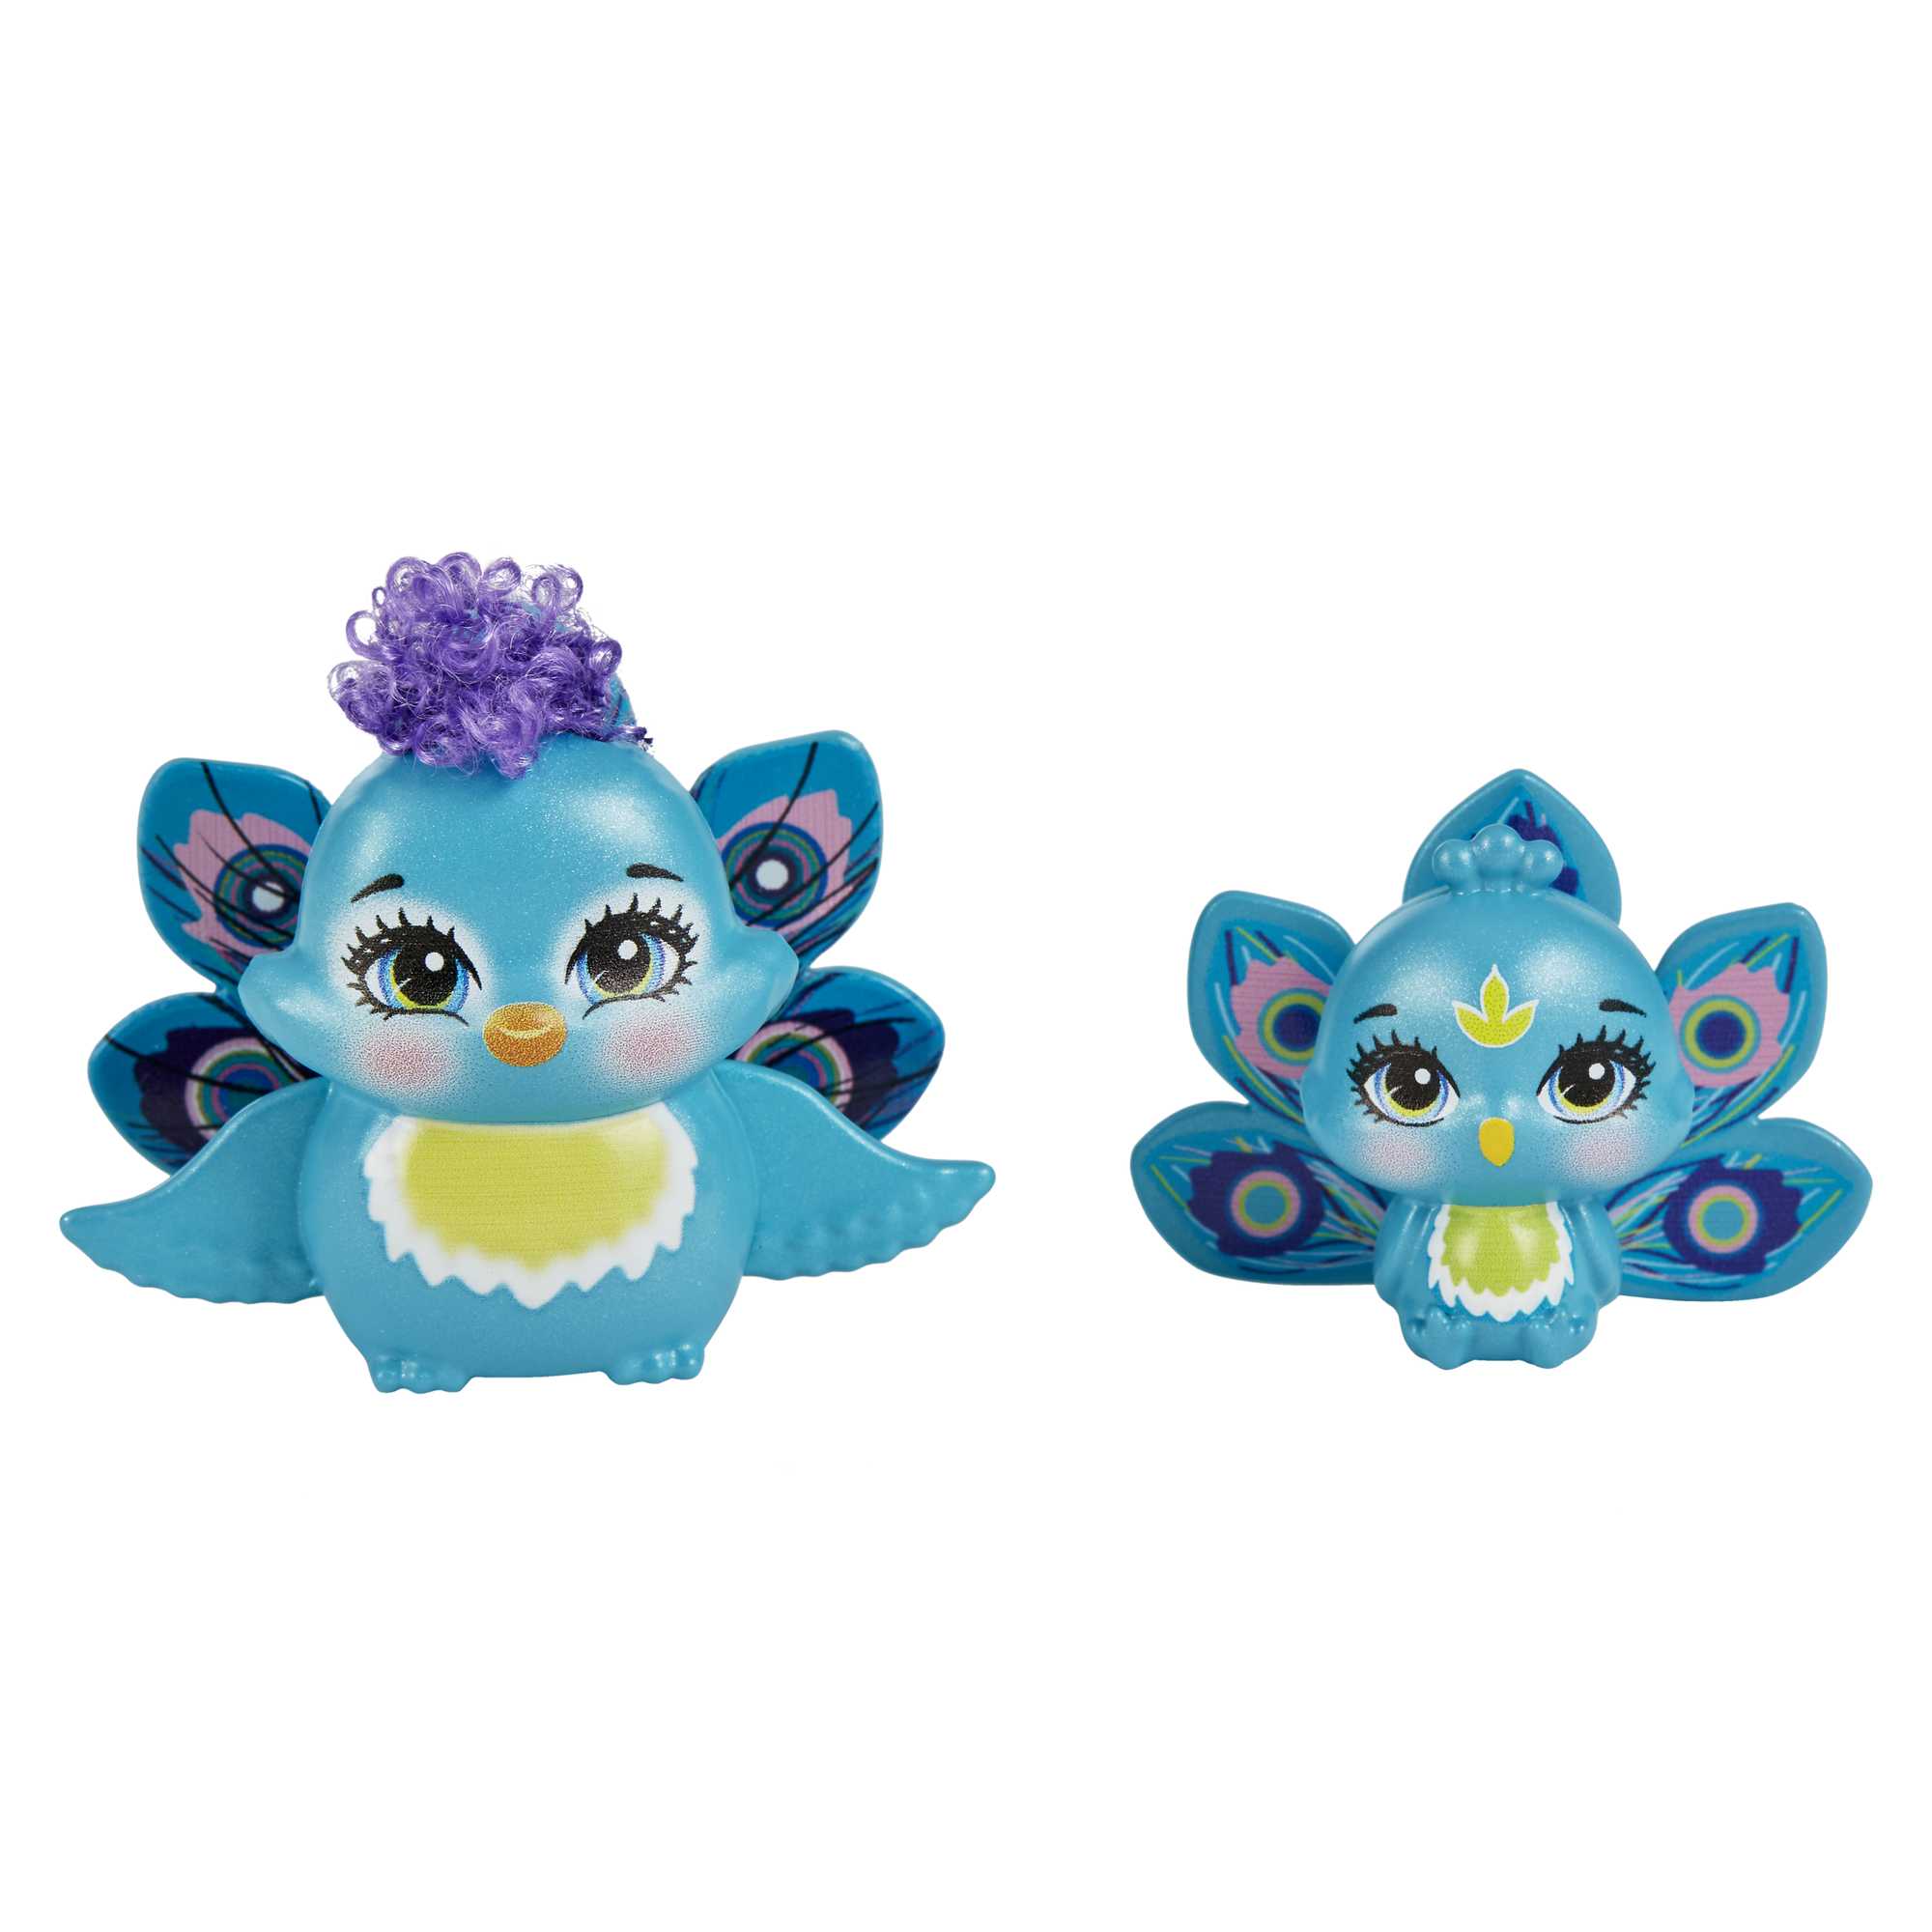 Enchantimals Coffret Sœurs avec mini-poupées Patter et Piera Paon, 2  mini-figurines animales et accessoires, jouet pour enfant, HCF83